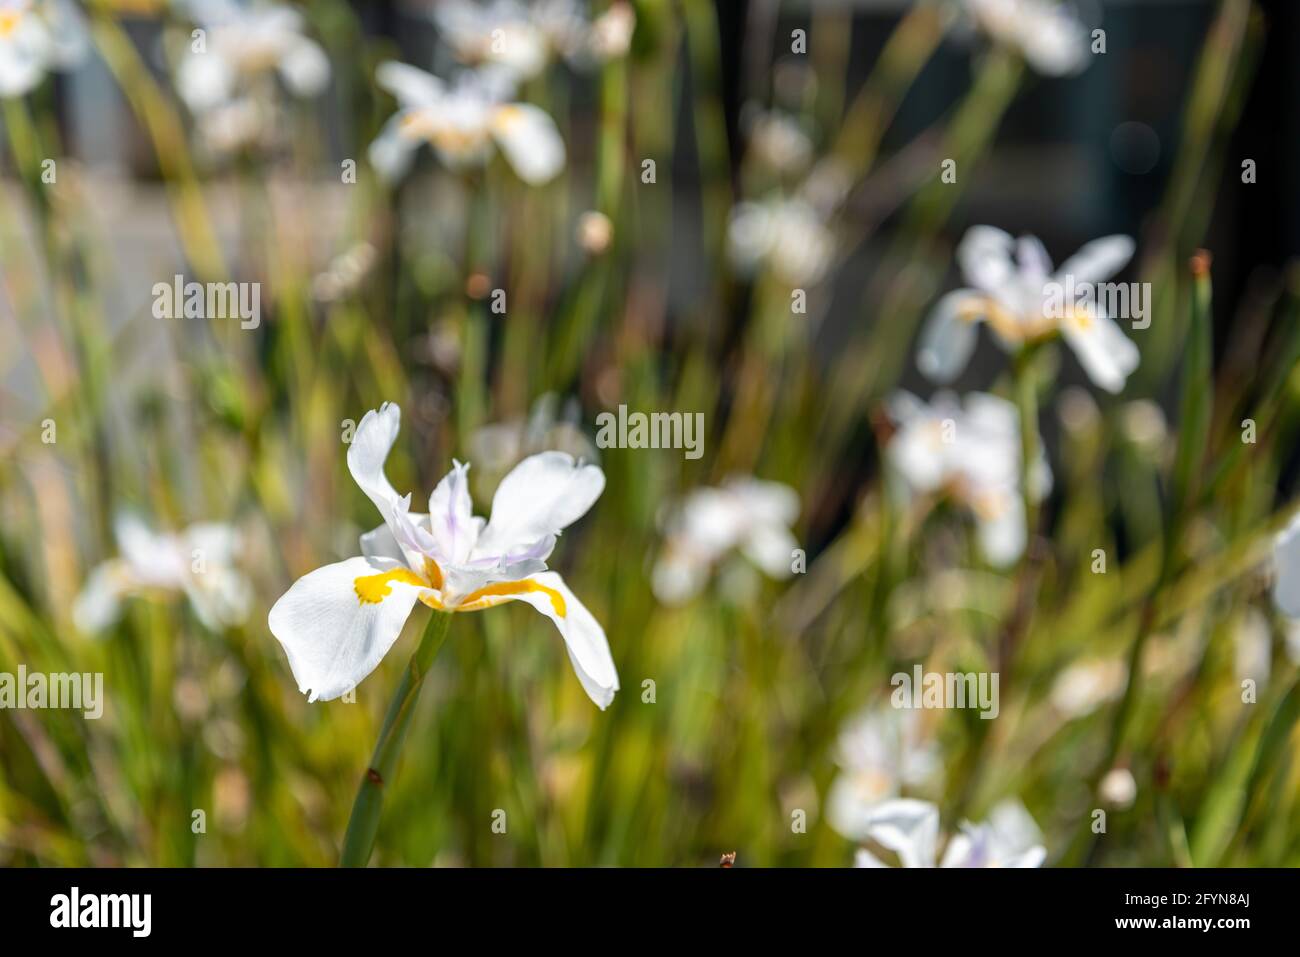 Wild iris blooming, New Zealand Stock Photo